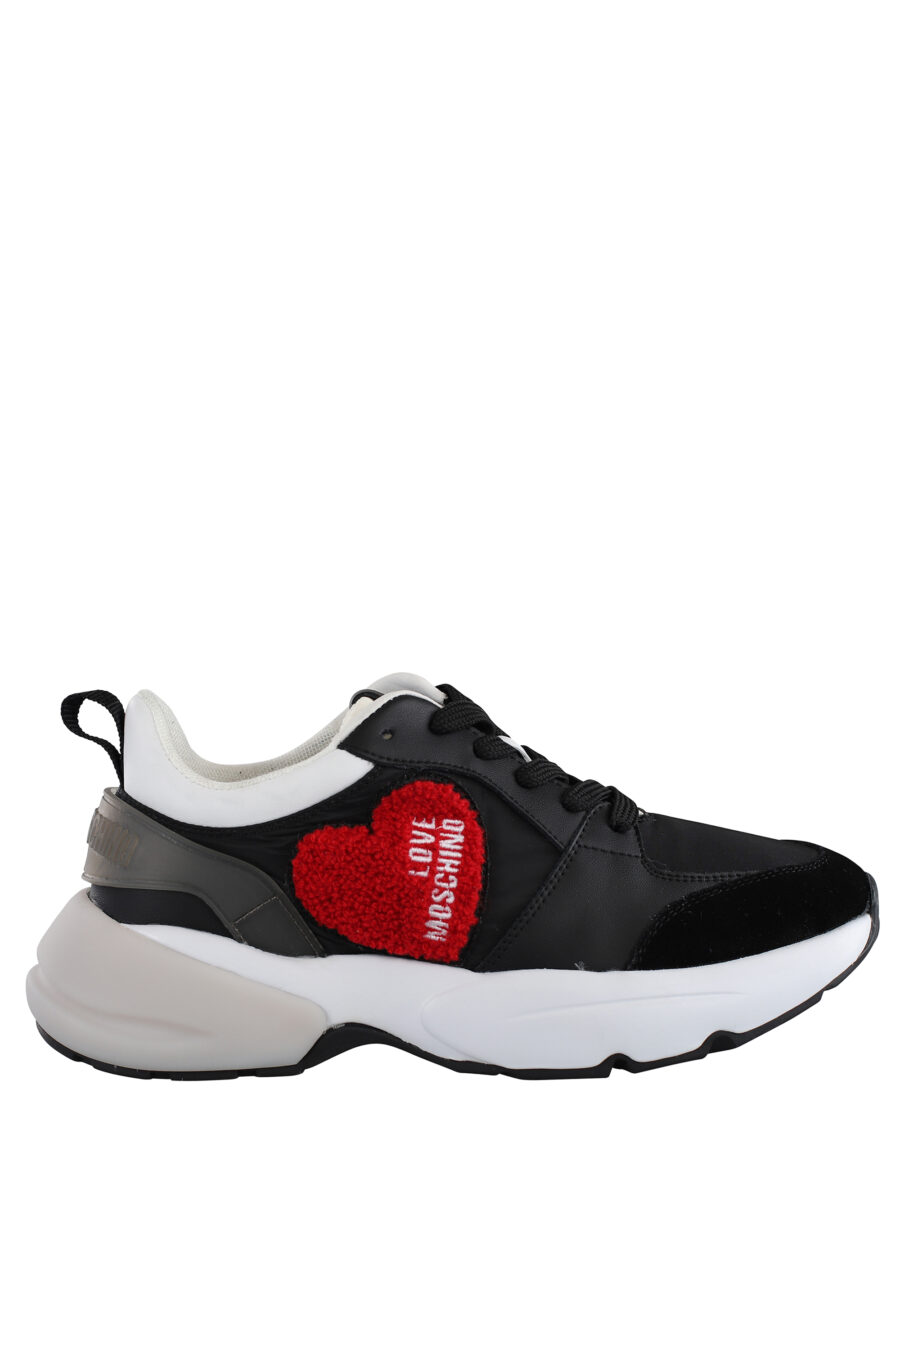 Sapatilhas "desportivas" pretas com pormenores brancos e coração bordado a vermelho - IMG 7117